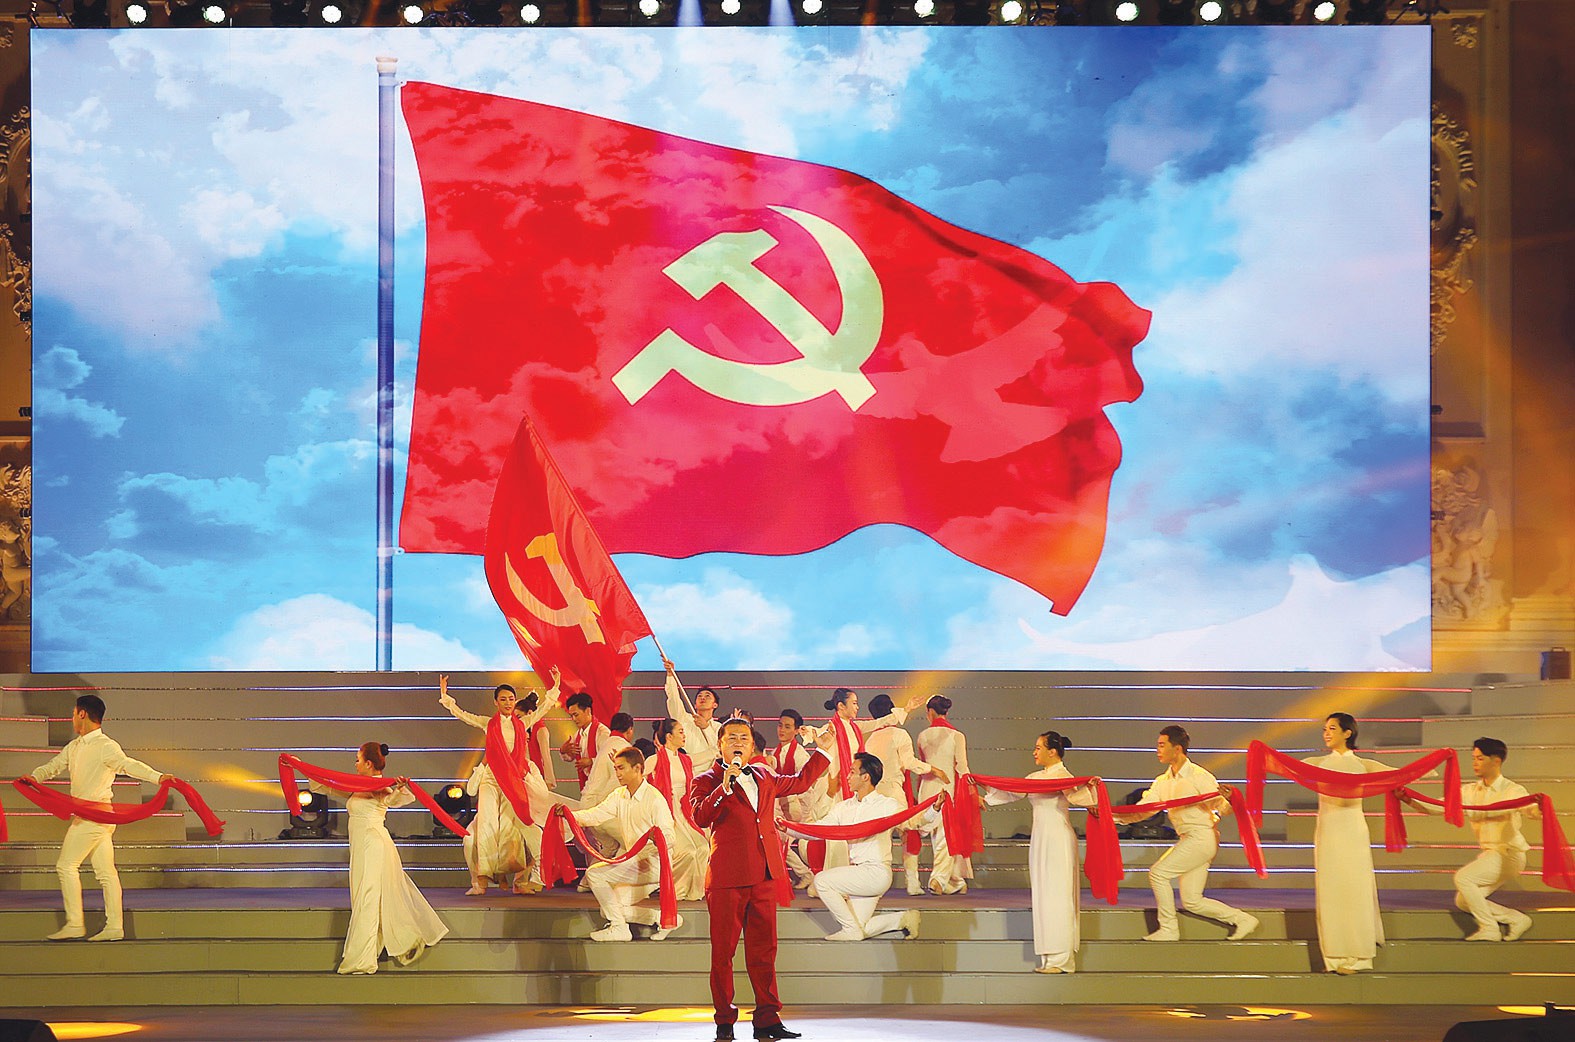 Tự hào Đảng Cộng sản Việt Nam: Đảng Cộng sản Việt Nam là niềm tự hào của toàn dân tộc. Chúng ta tự hào vì Đảng ta đã đưa đất nước đi lên trên con đường phát triển và cùng nhau vươn lên thành một dân tộc đoàn kết, giàu mạnh và tiên tiến. Chúng ta cùng chiêm ngưỡng những hình ảnh, câu chuyện đầy cảm hứng về Đảng ta.